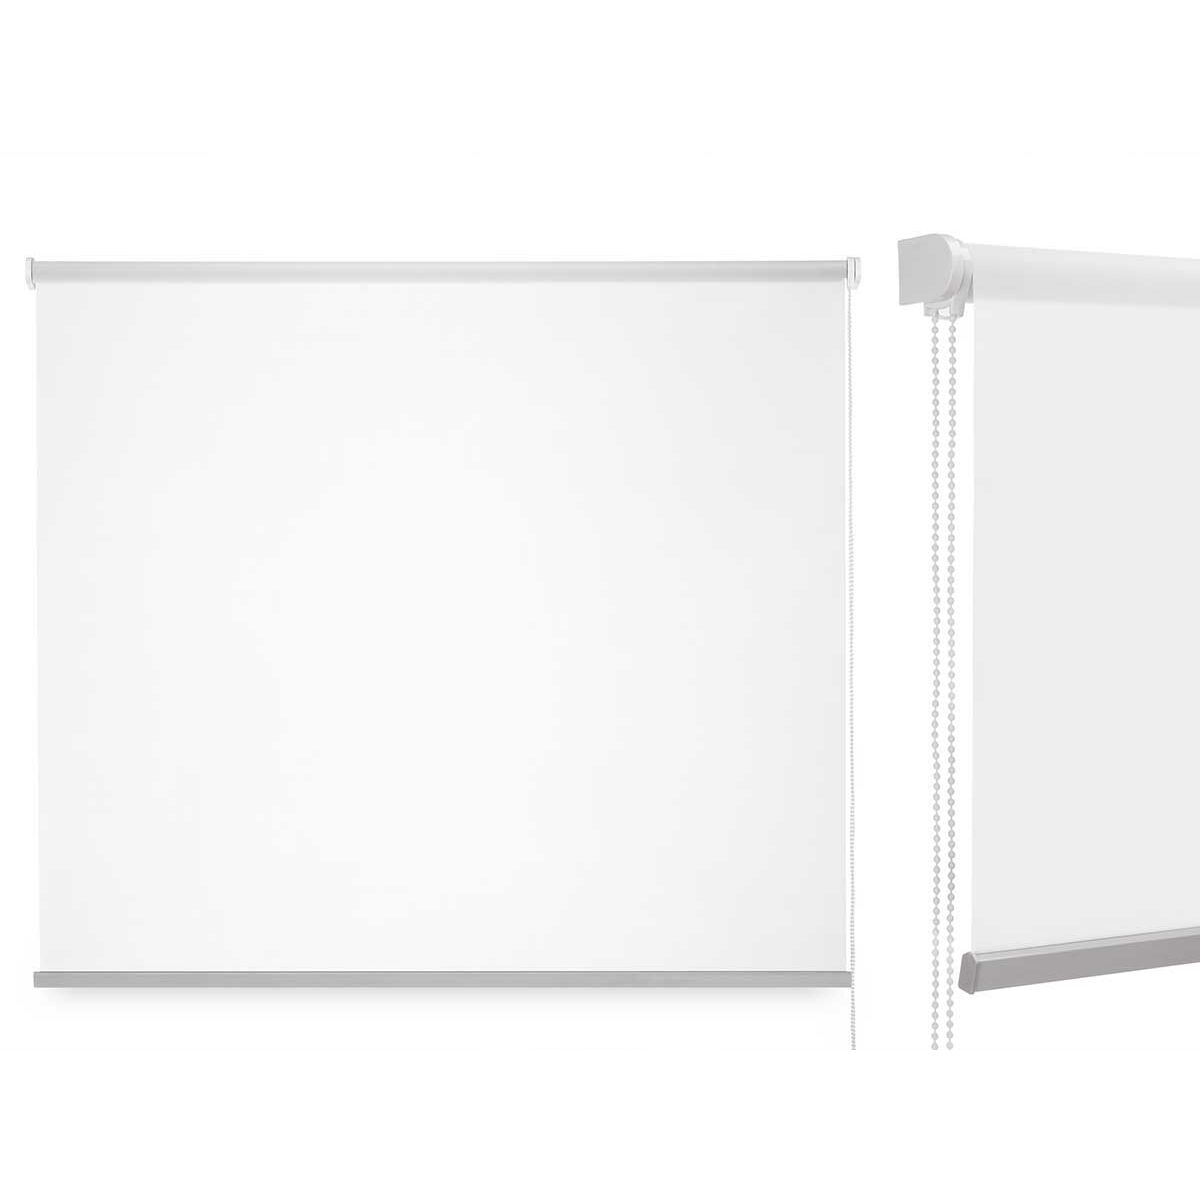 Rullegardiner Hvid Klæde Plastik 120 x 180 cm (6 enheder)